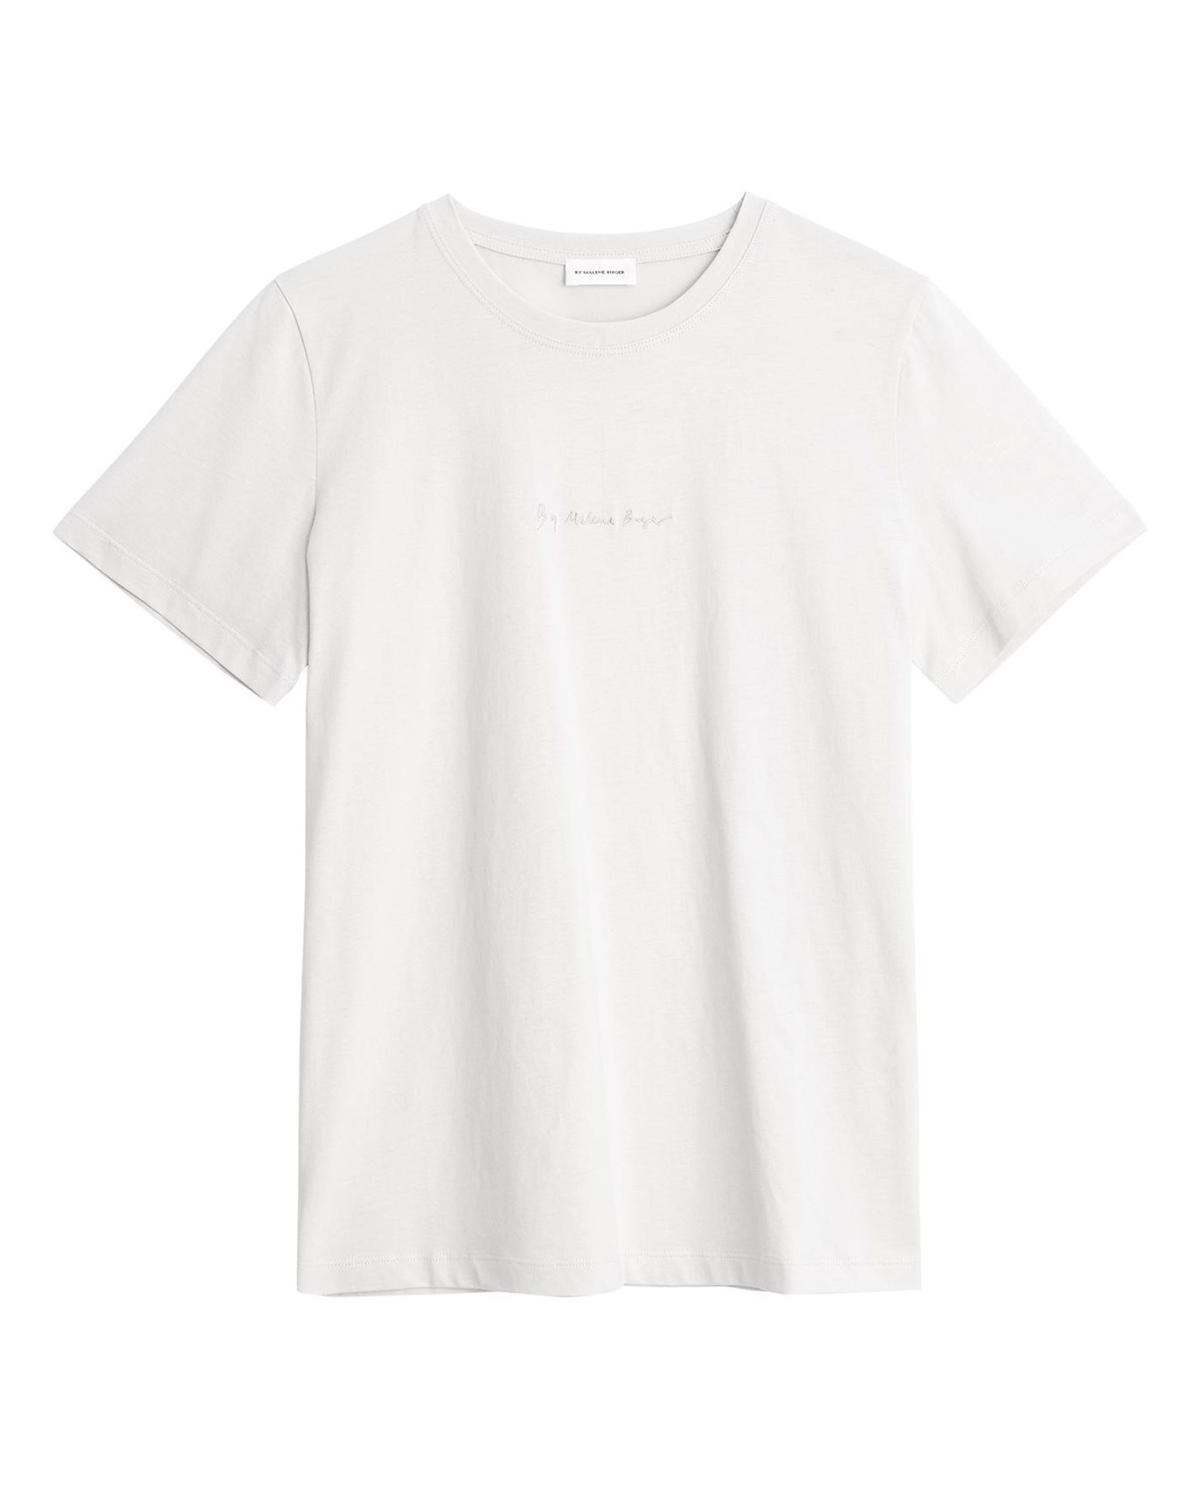 Desmos T-shirt Whisper White